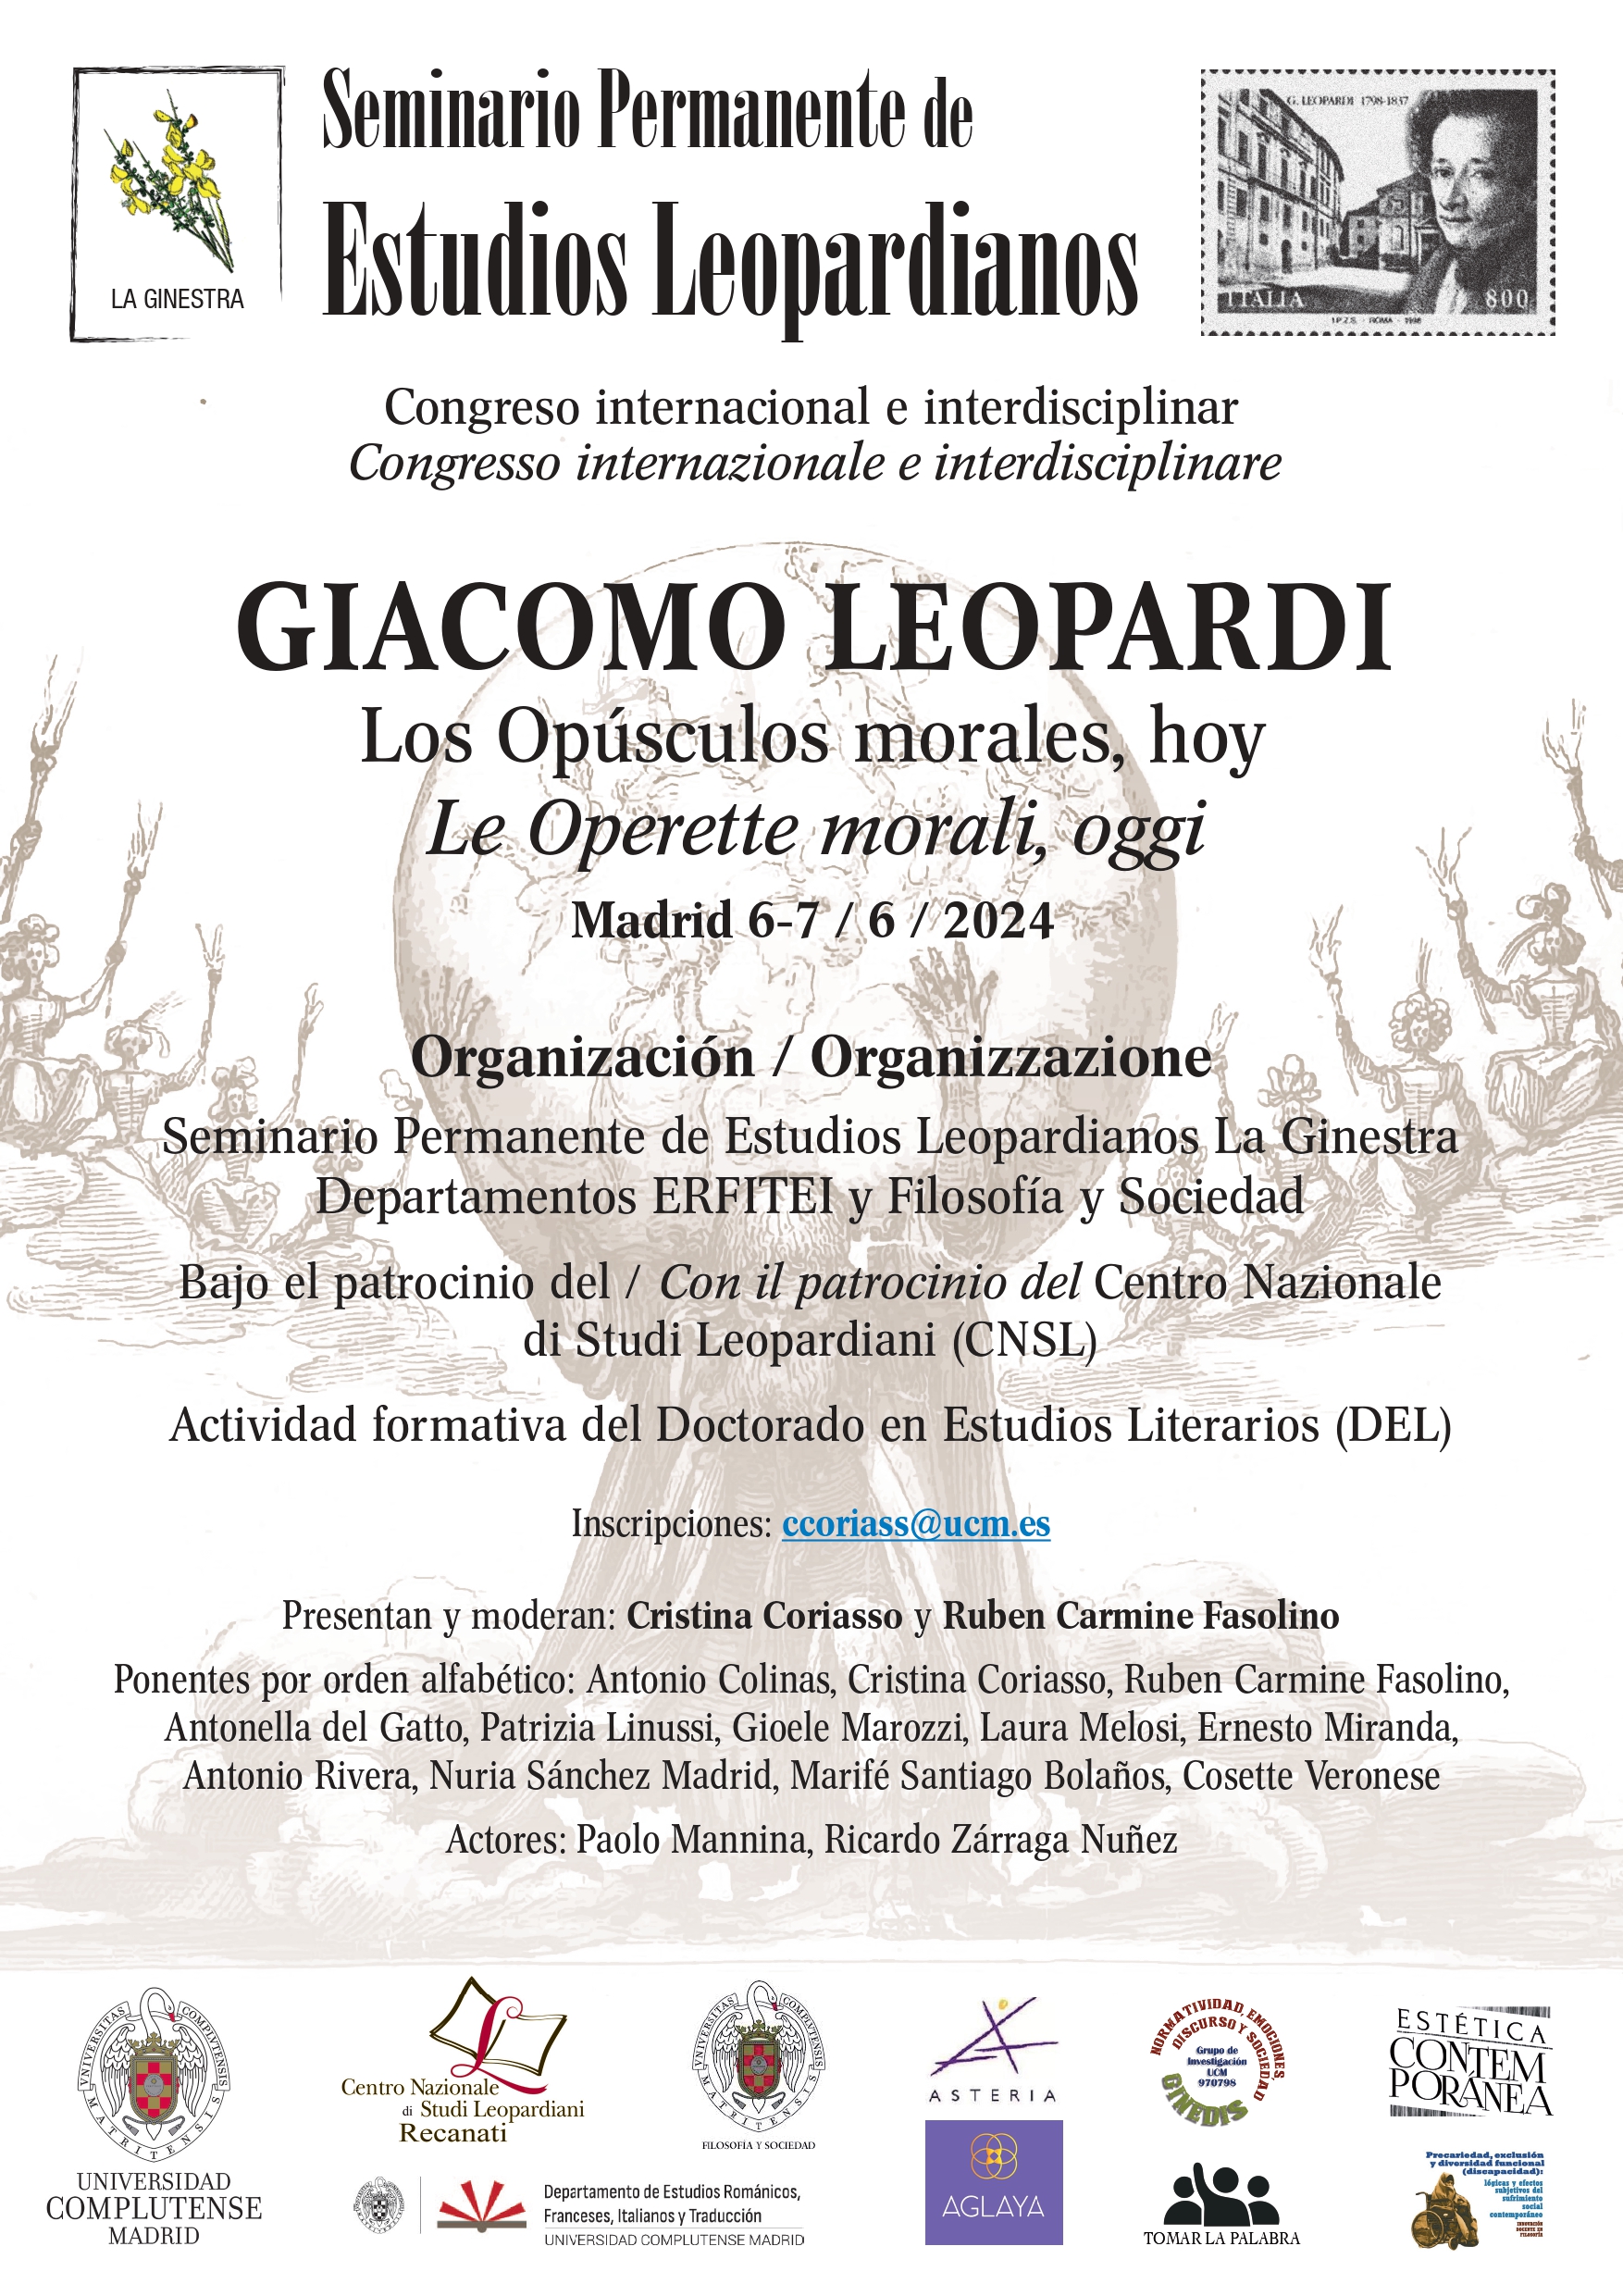 Congreso "Giacomo Leopardi. Los Opúsculos morales, hoy"